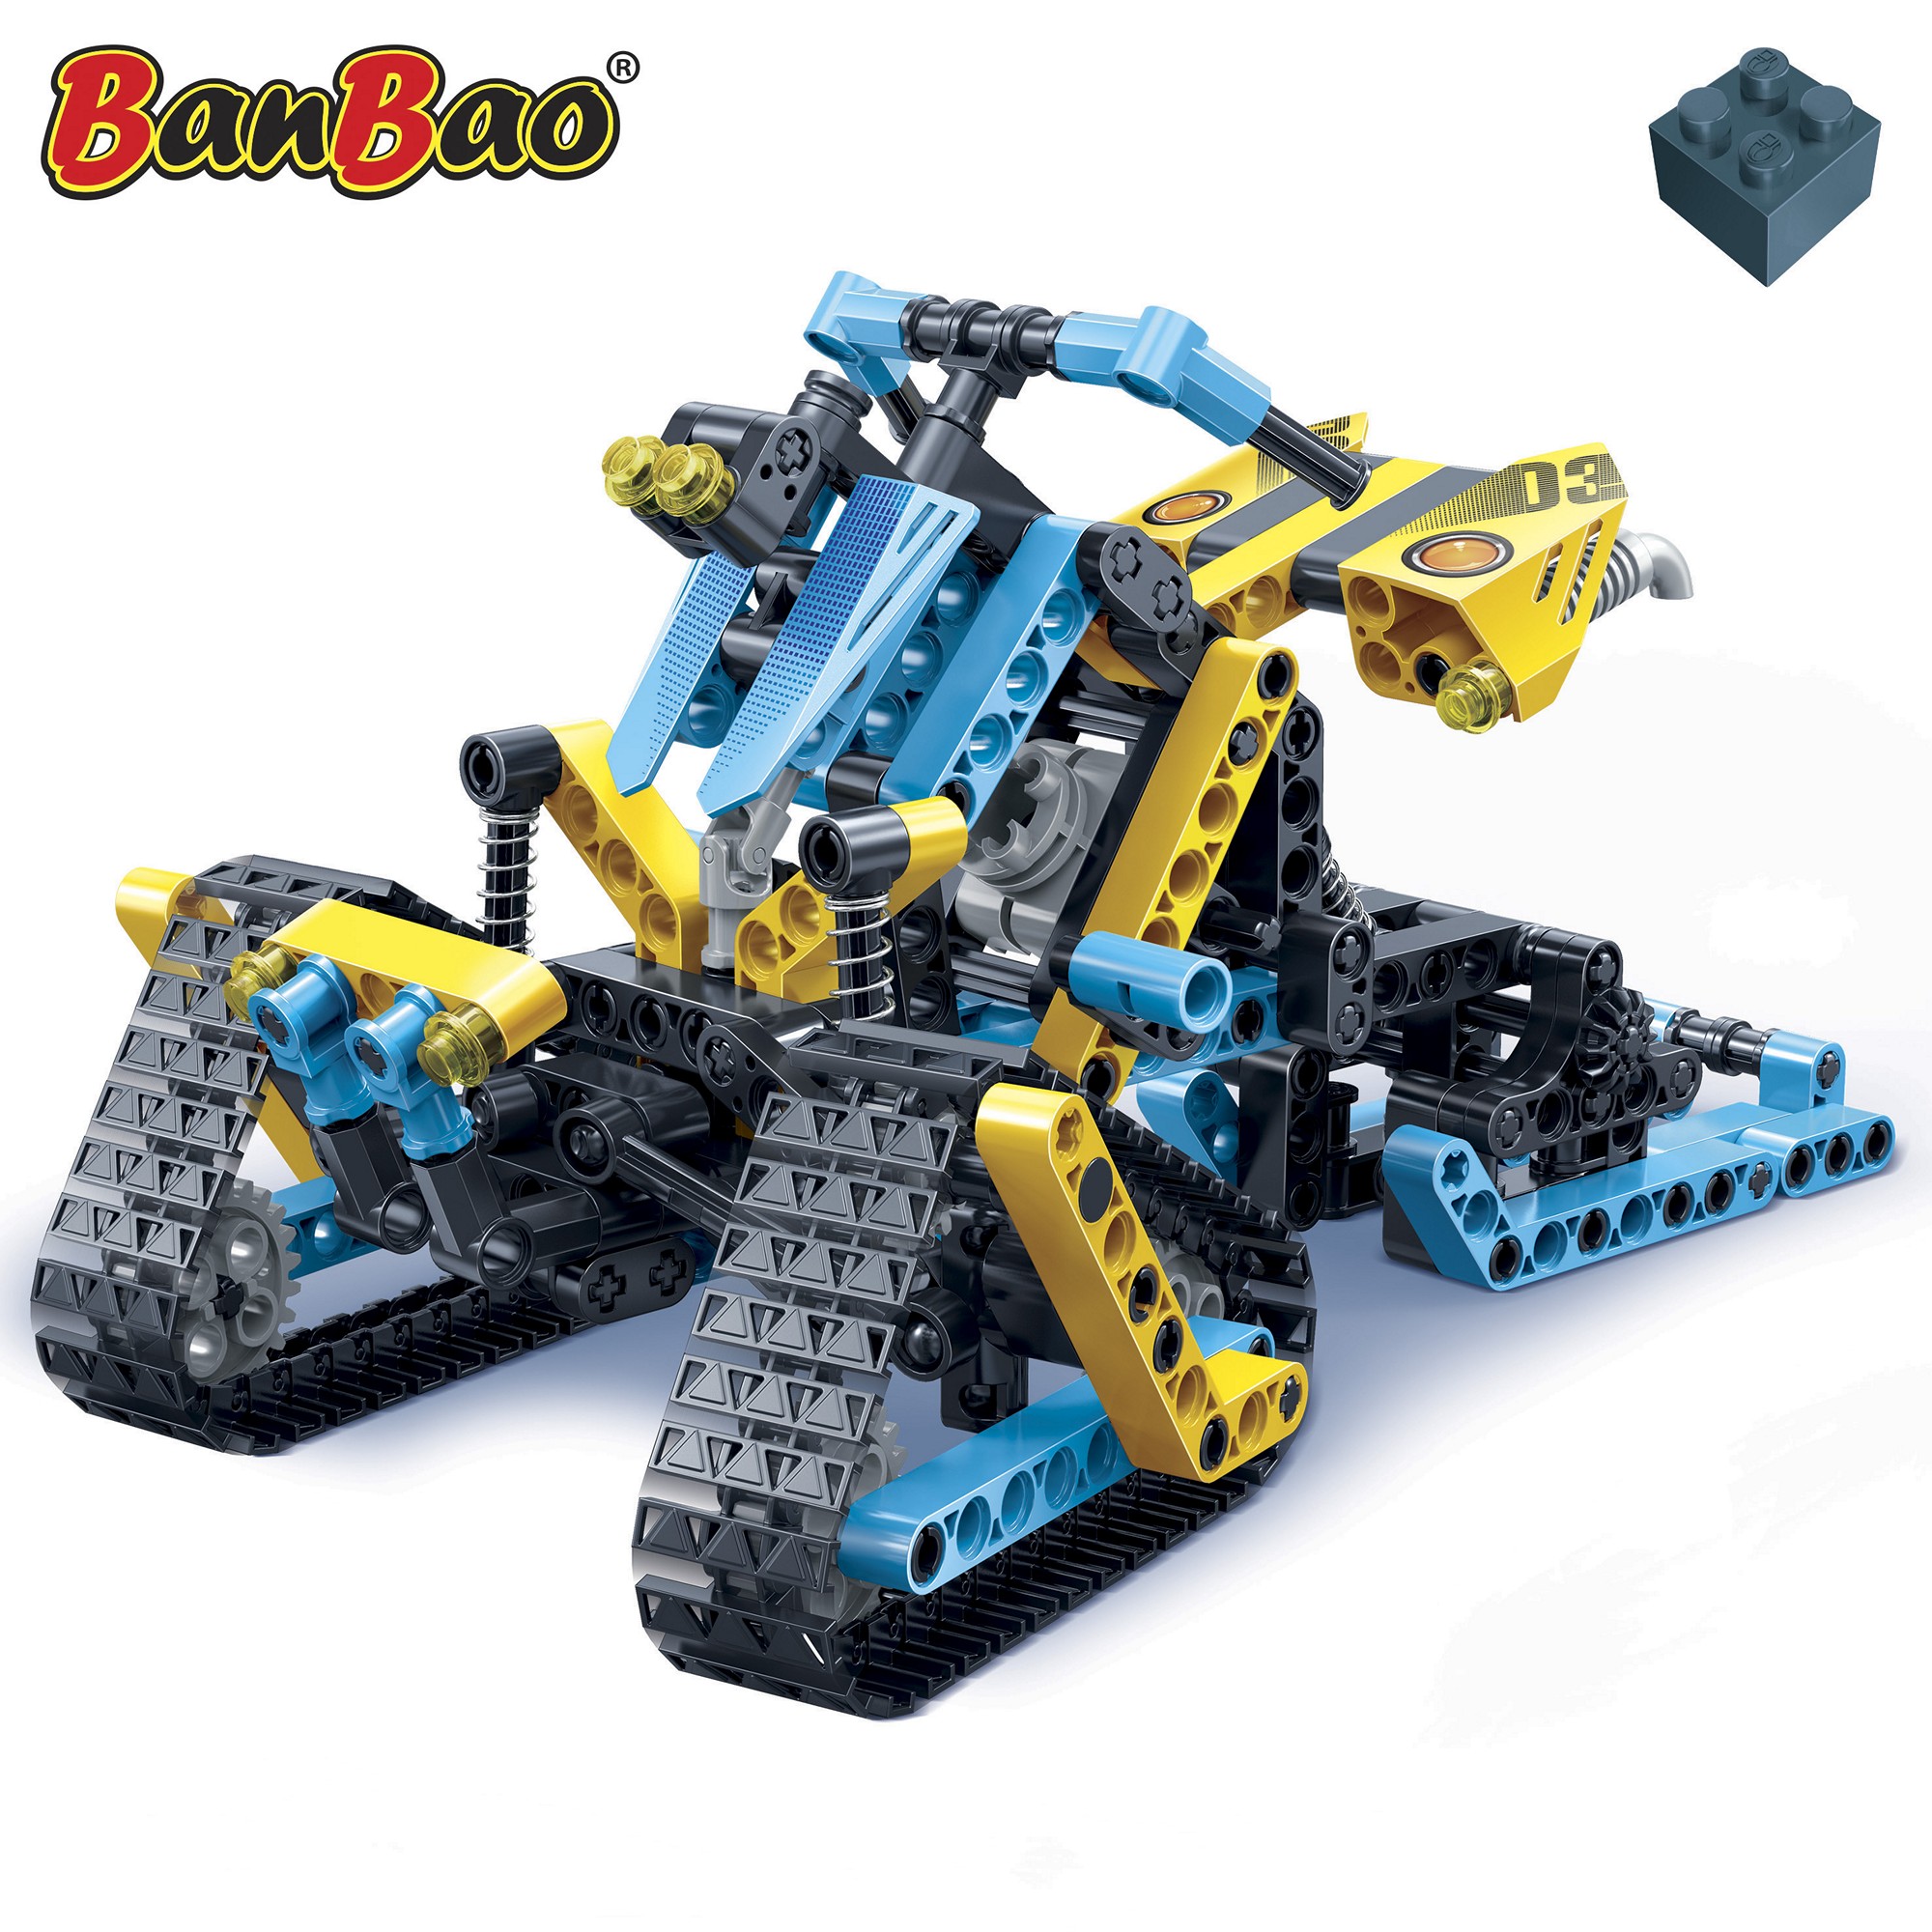 Kinder Geschenk Konstruktions Spielzeug Bausteine Baukästen Schneemobil Hi-Tech Banbao 6953